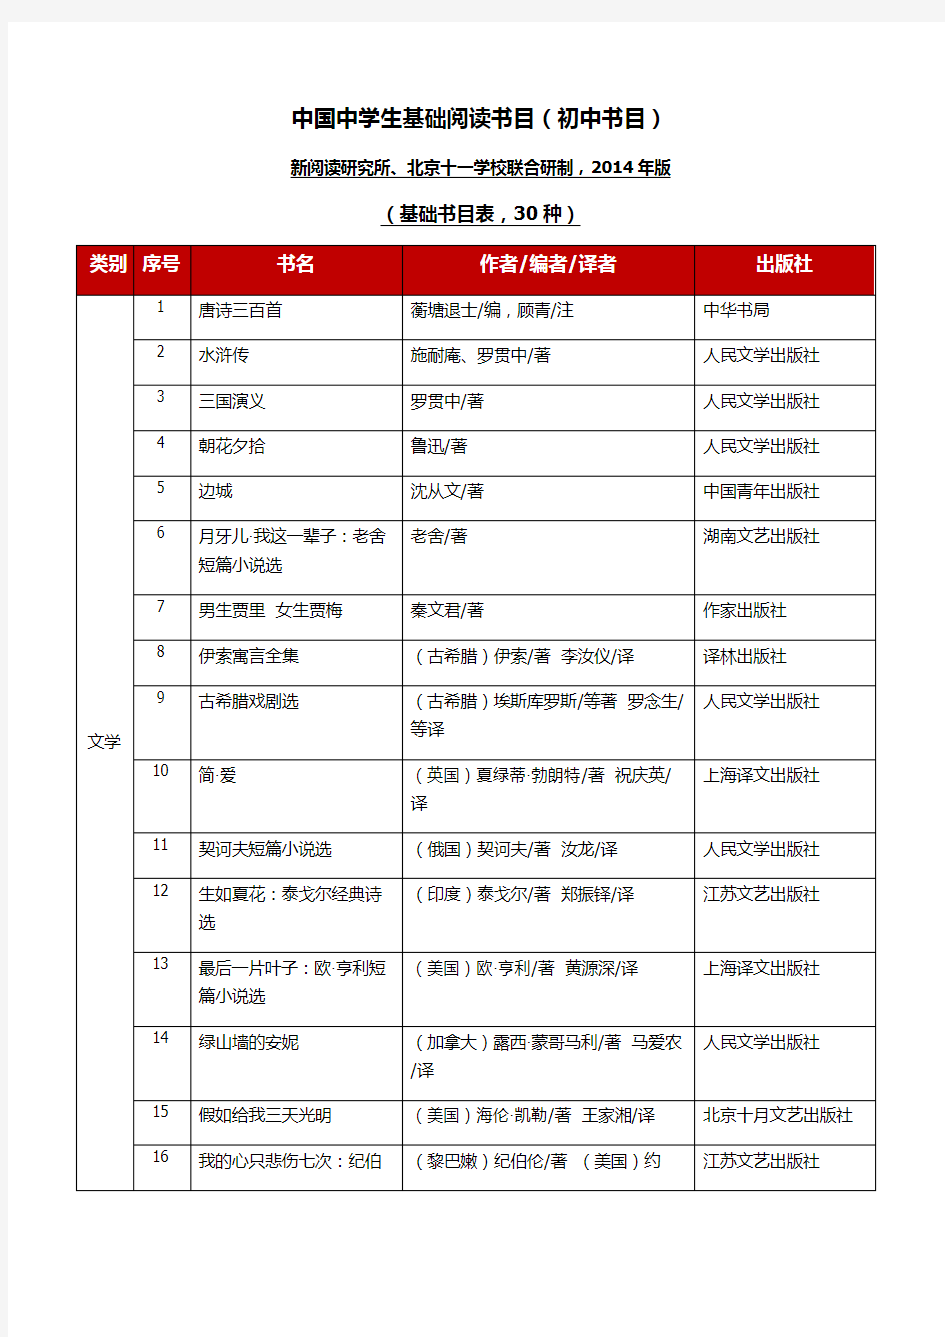 《中国中学生基础阅读书目(初中书目)》2014年修订版